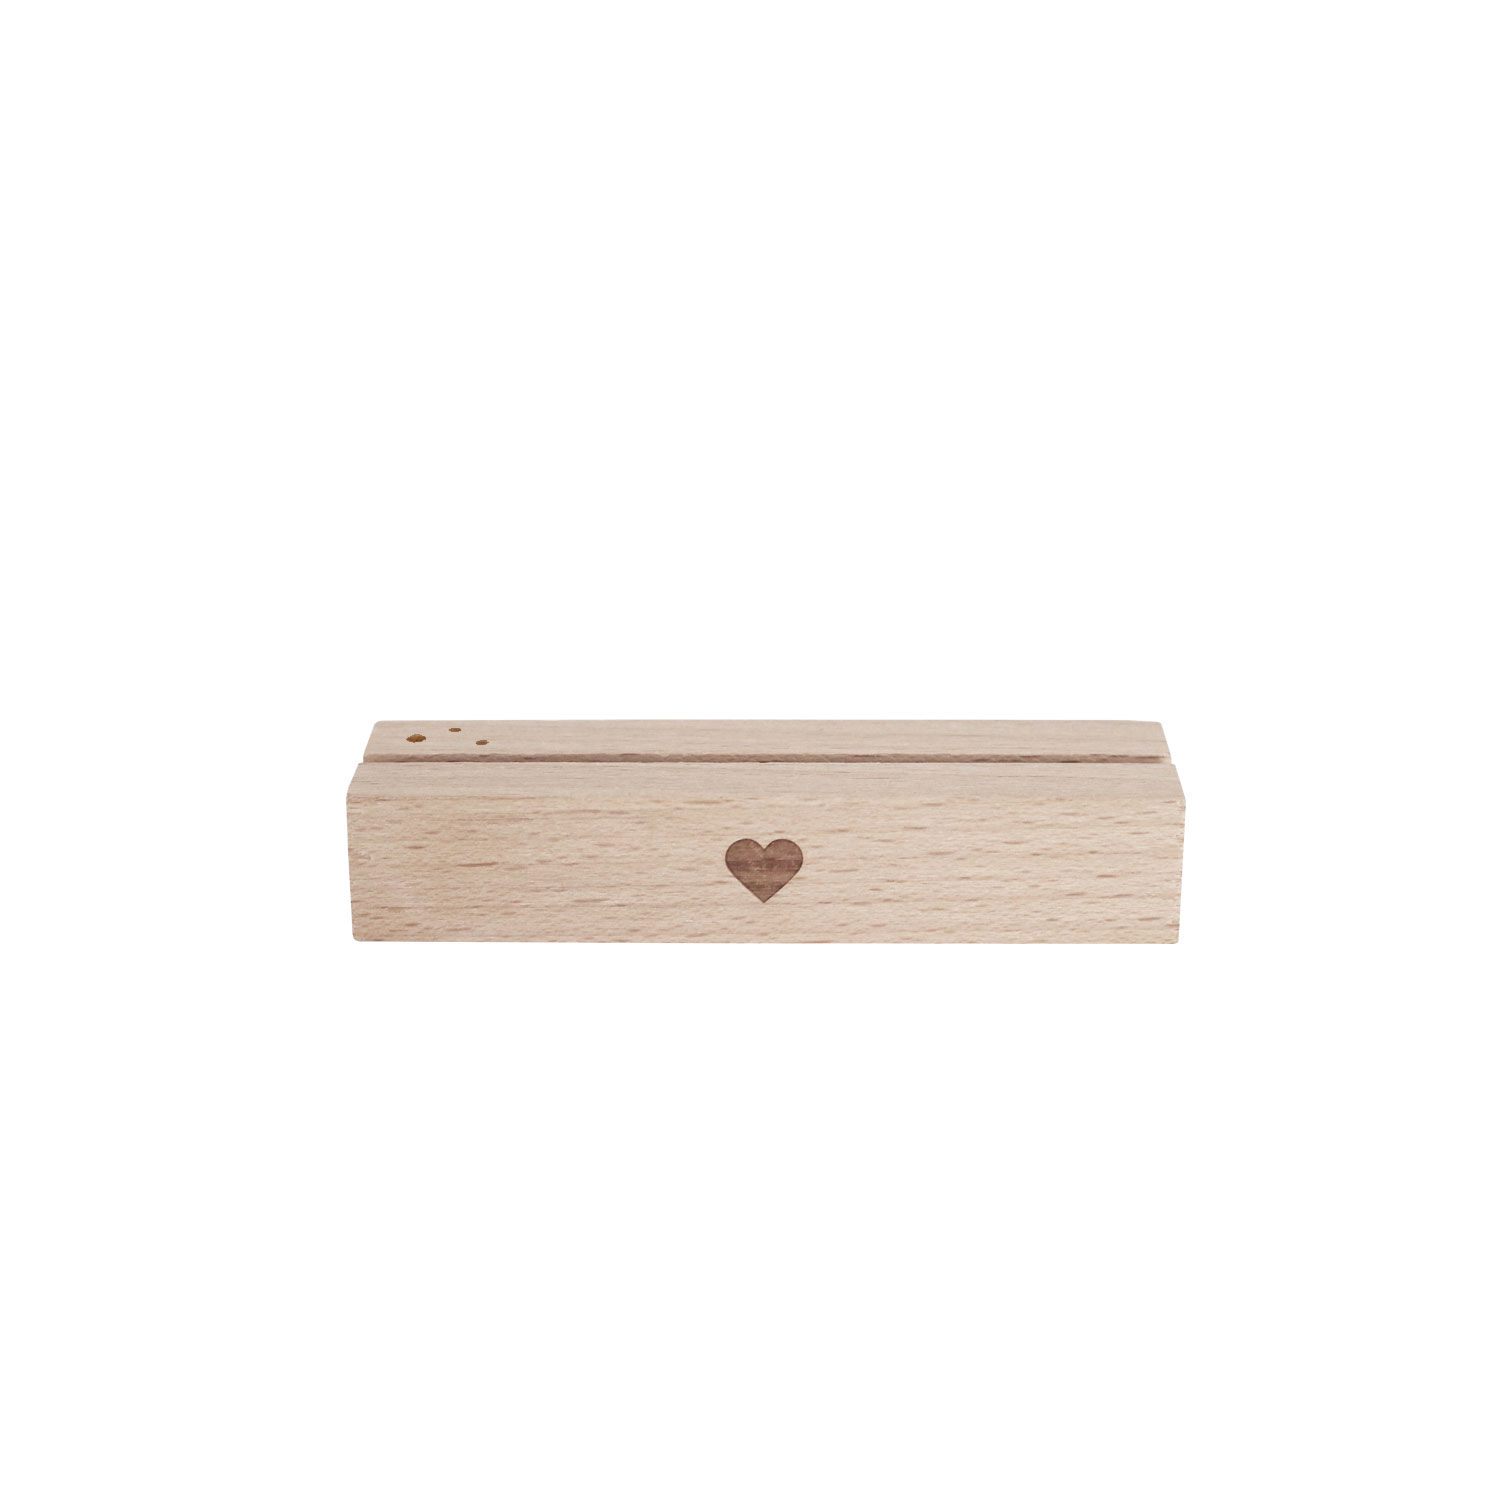 Kartenhalter aus Holz 2er Set  für Platzkarten und Blumen mit kleinem Herz in der Mitte